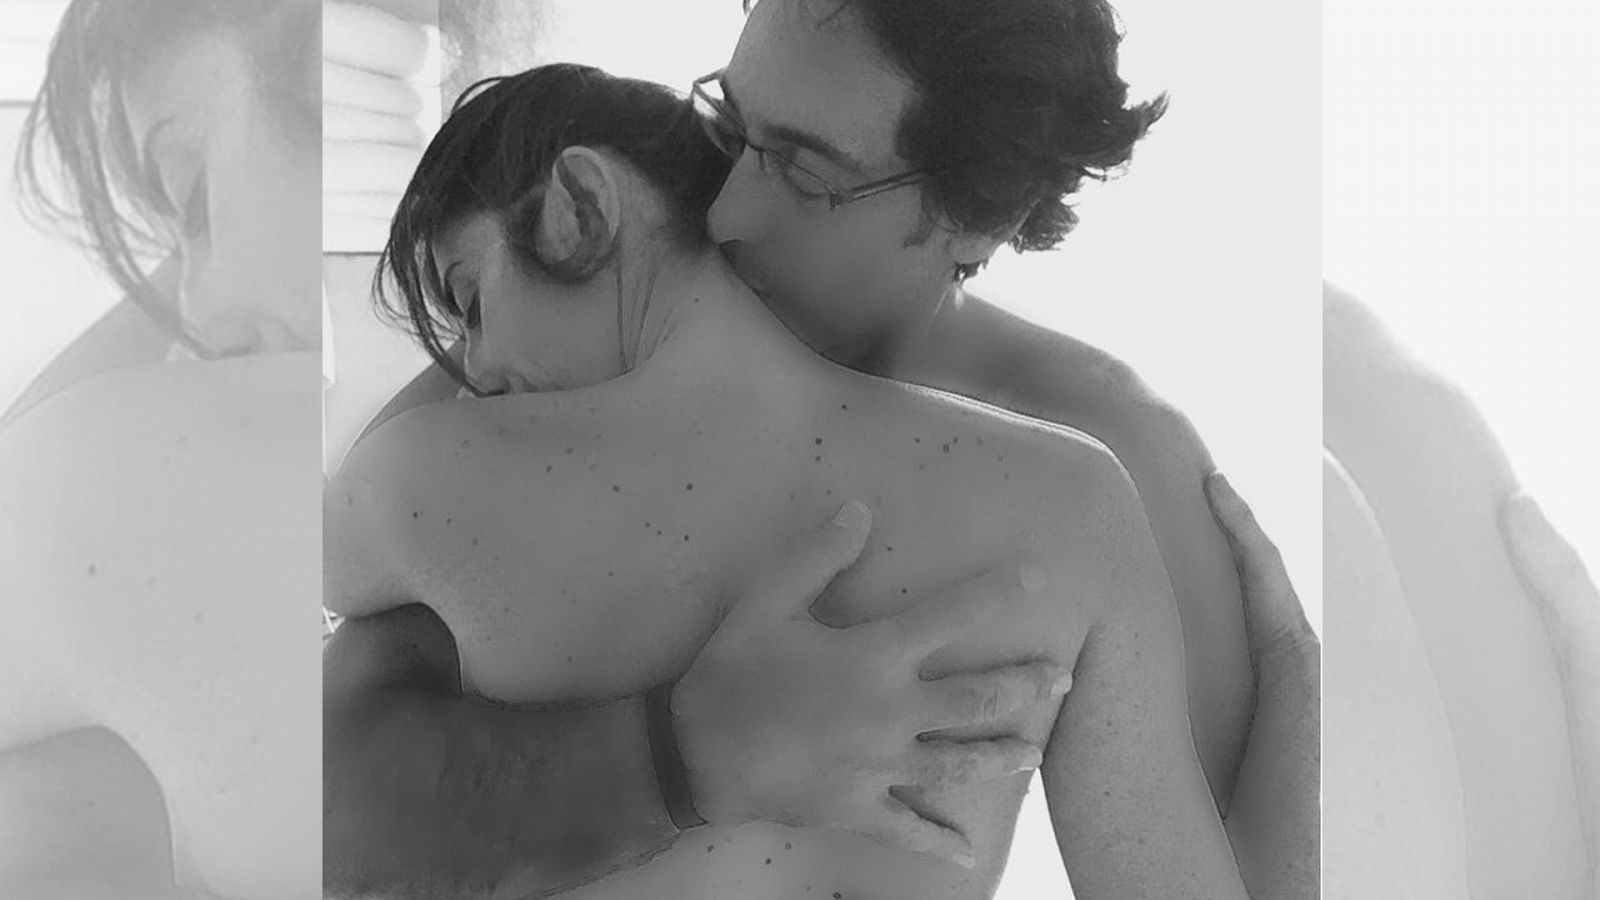  Paz Padilla se despide de su marido con esta foto en blanco y negro en la que aparecen con el torso desnudo abrazándose mientras él le besa la nuca